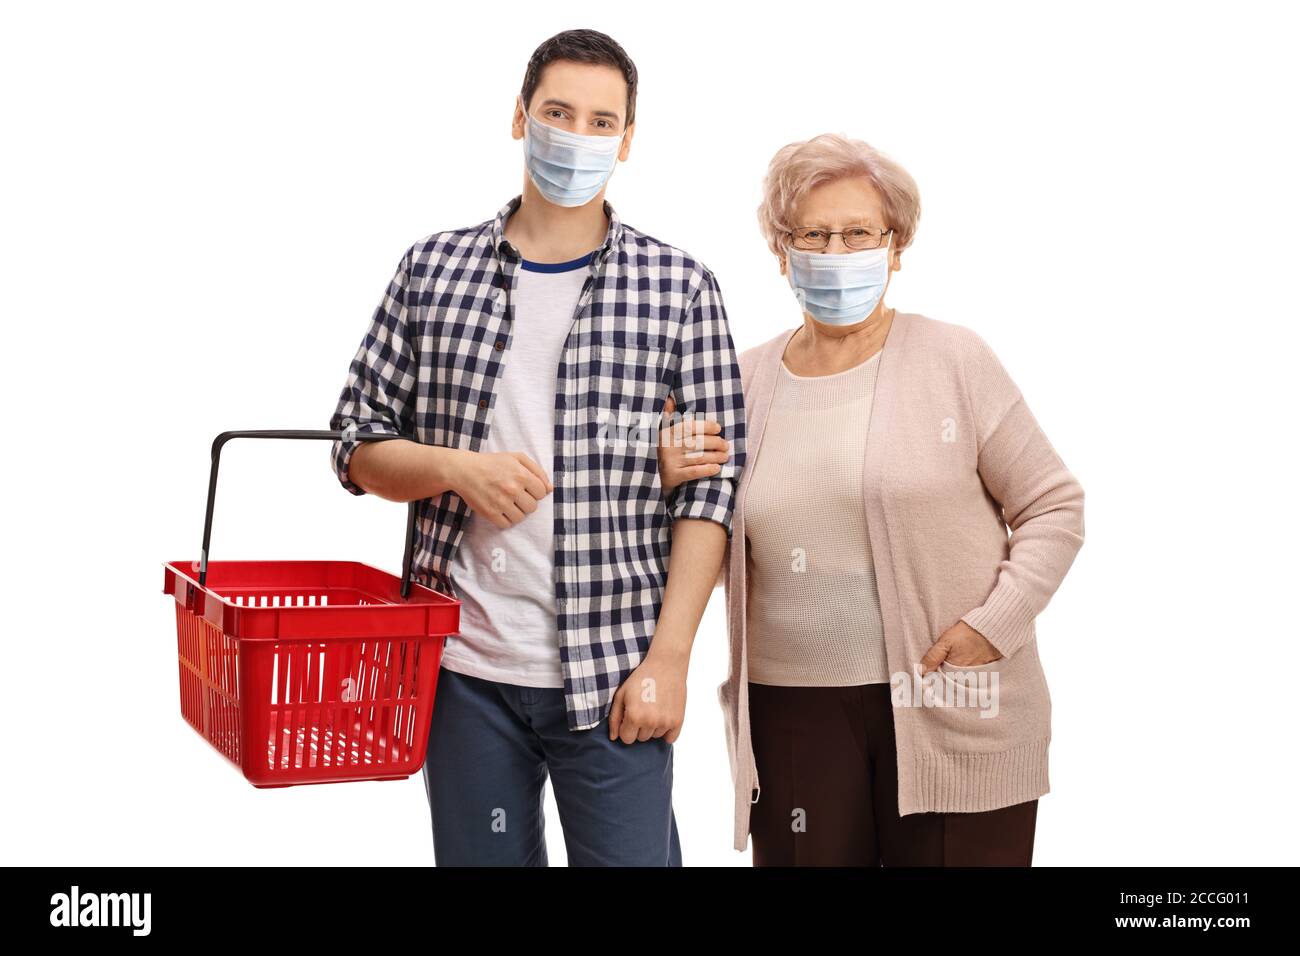 Jeune homme avec un panier vide et un vieux femme portant des masques de protection isolés sur fond blanc Banque D'Images